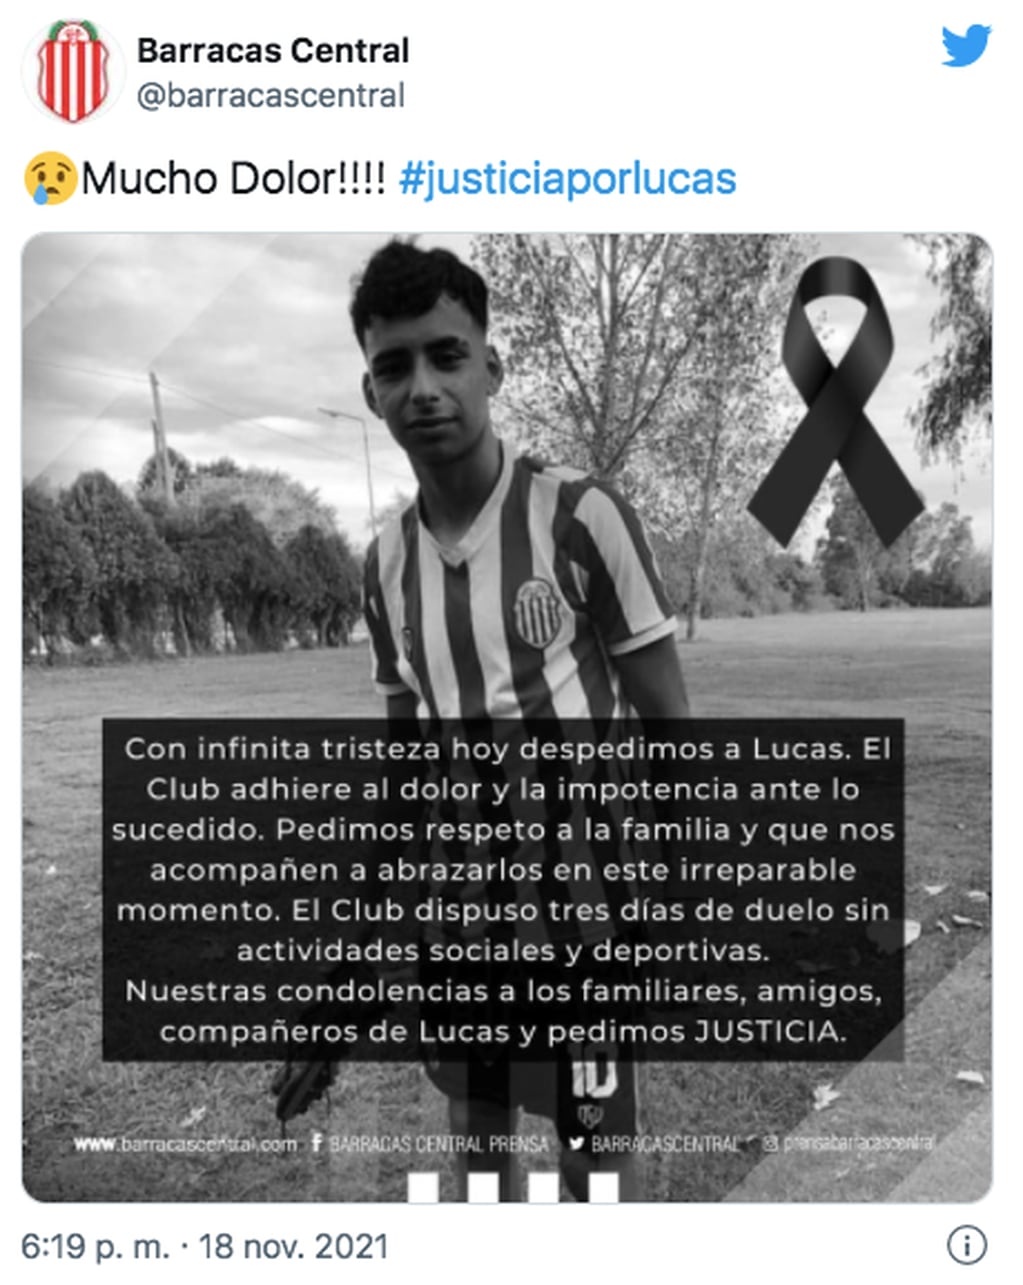 El mensaje de Barracas Central por el asesinato de Lucas González.